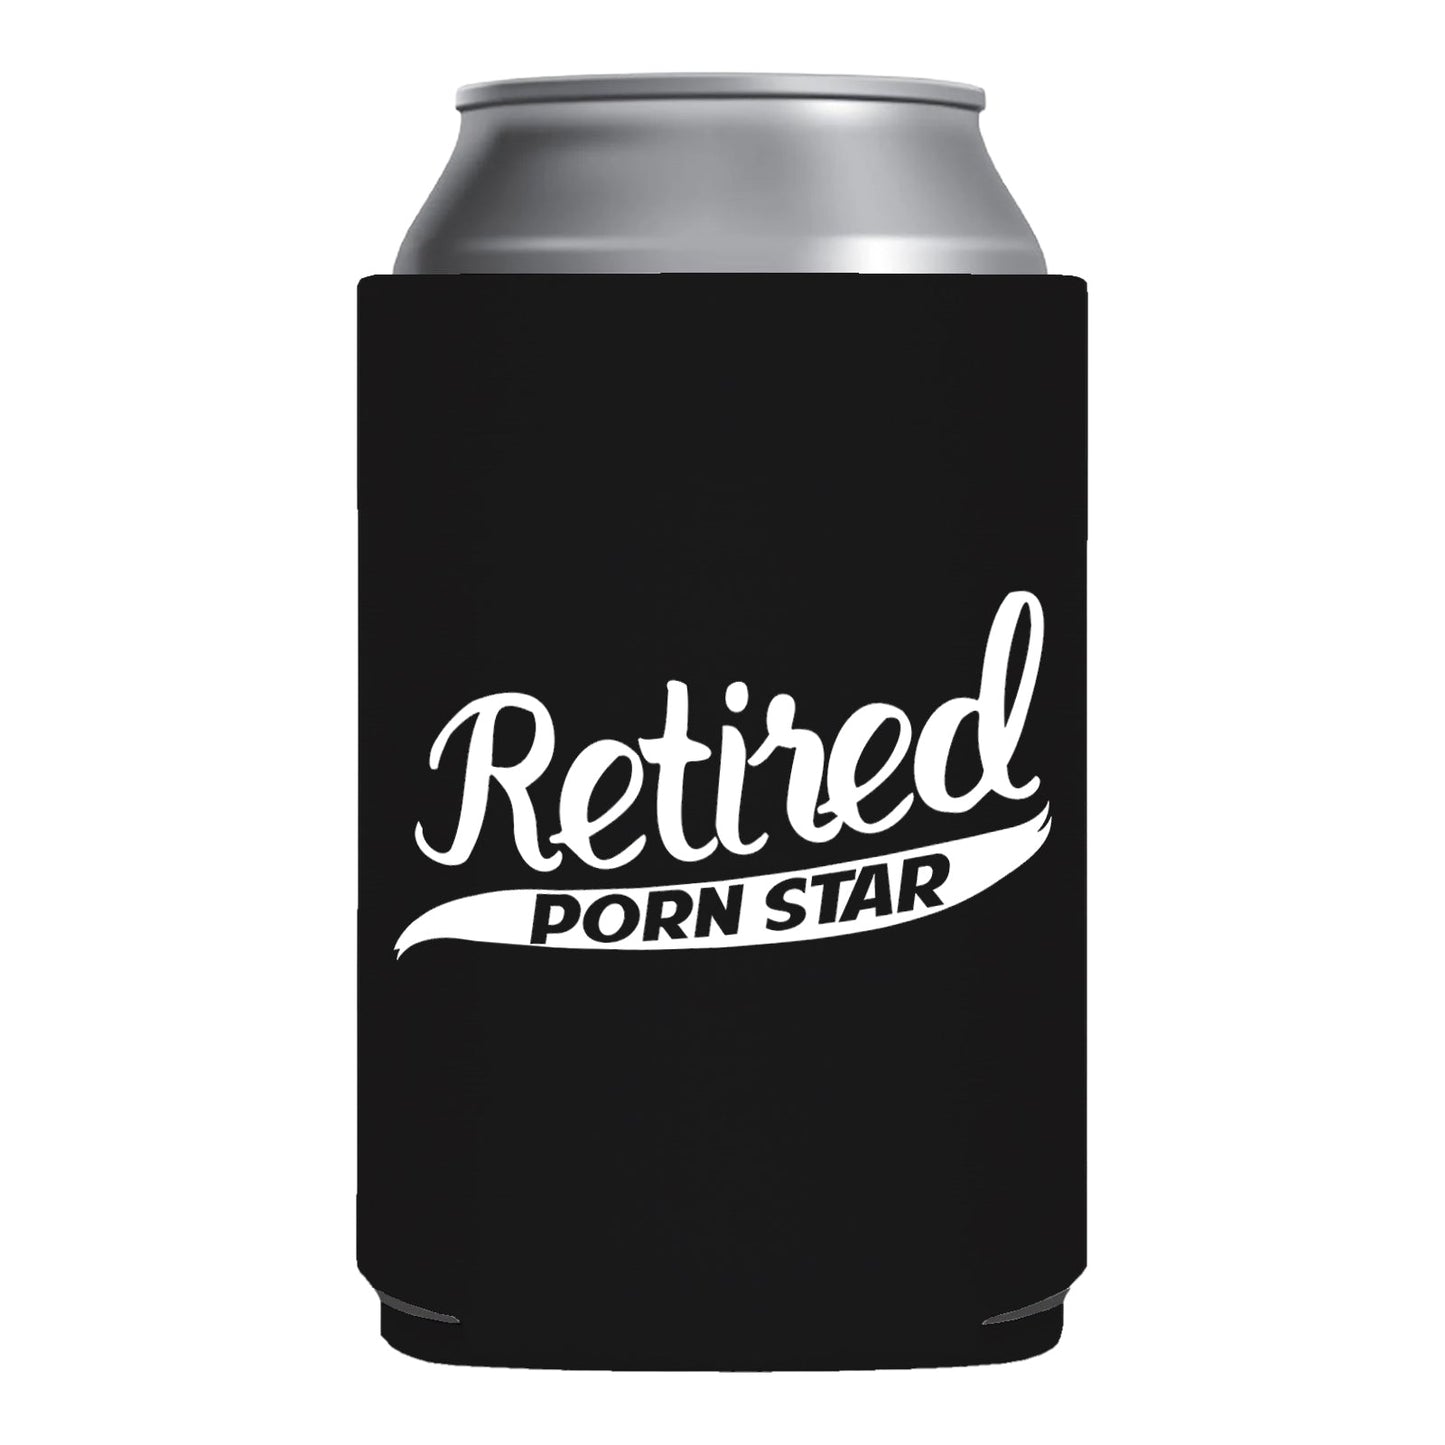 Retired PornStar Funny Beer Can Cooler Holder Sleeve